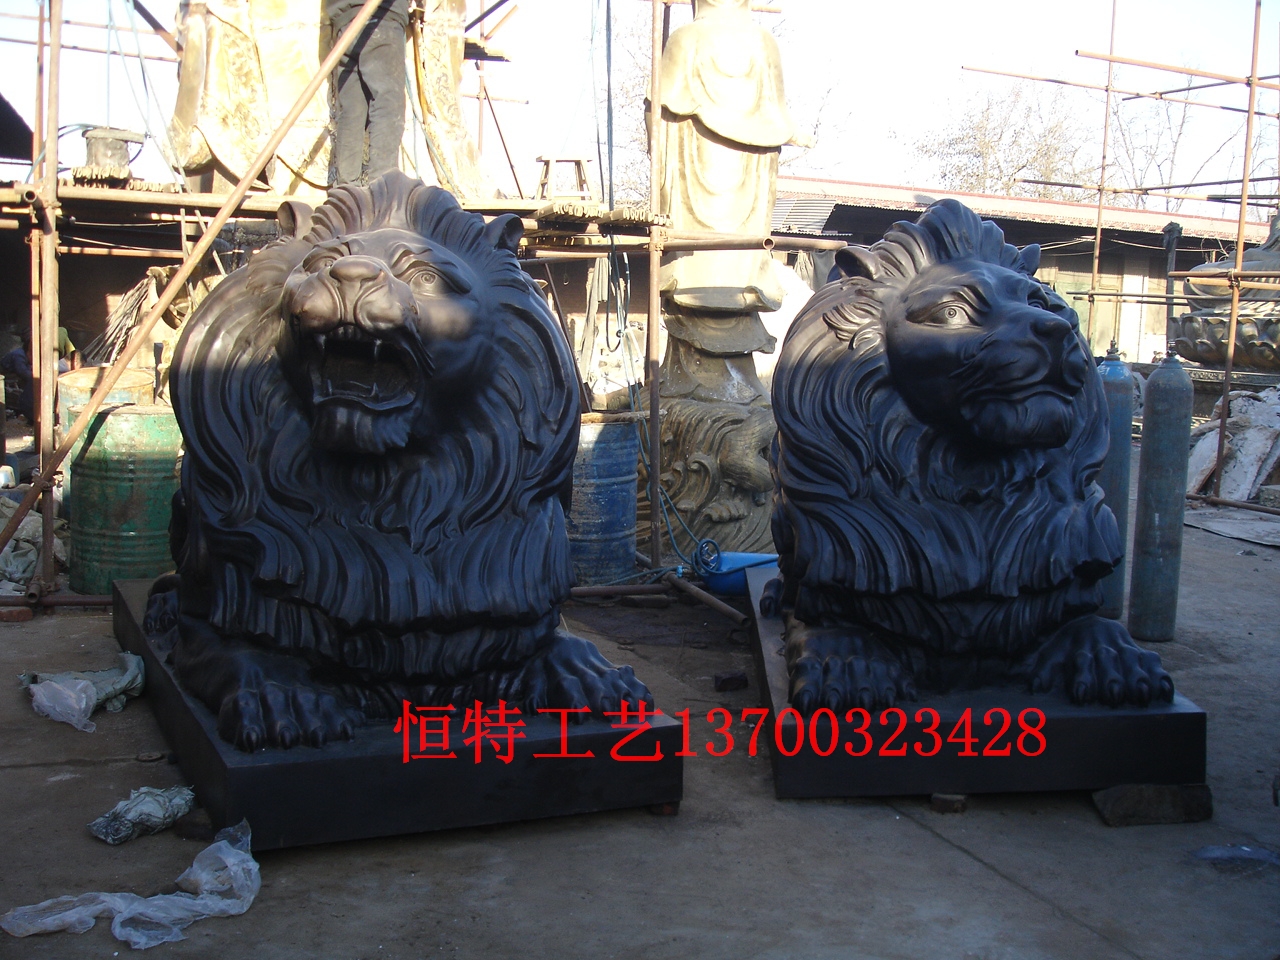 铜雕制作|动物雕塑制作@上海汇丰狮子制作厂家图片